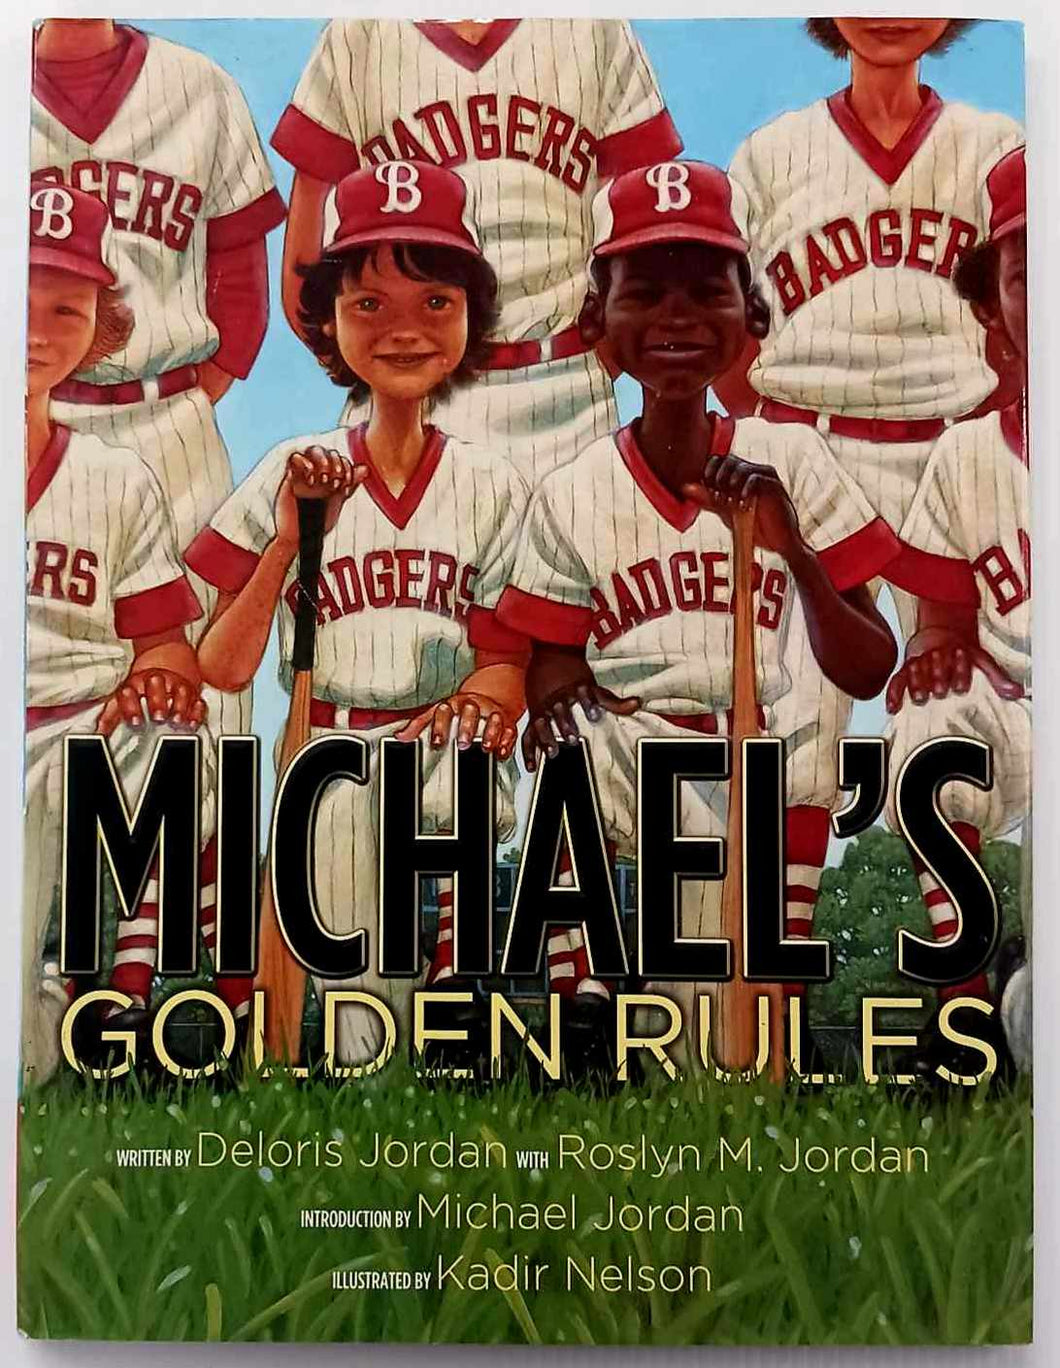 MICHAEL'S GOLDEN RULES - Delores Jordan, Roslyn M. Jordan, Michael Jordan